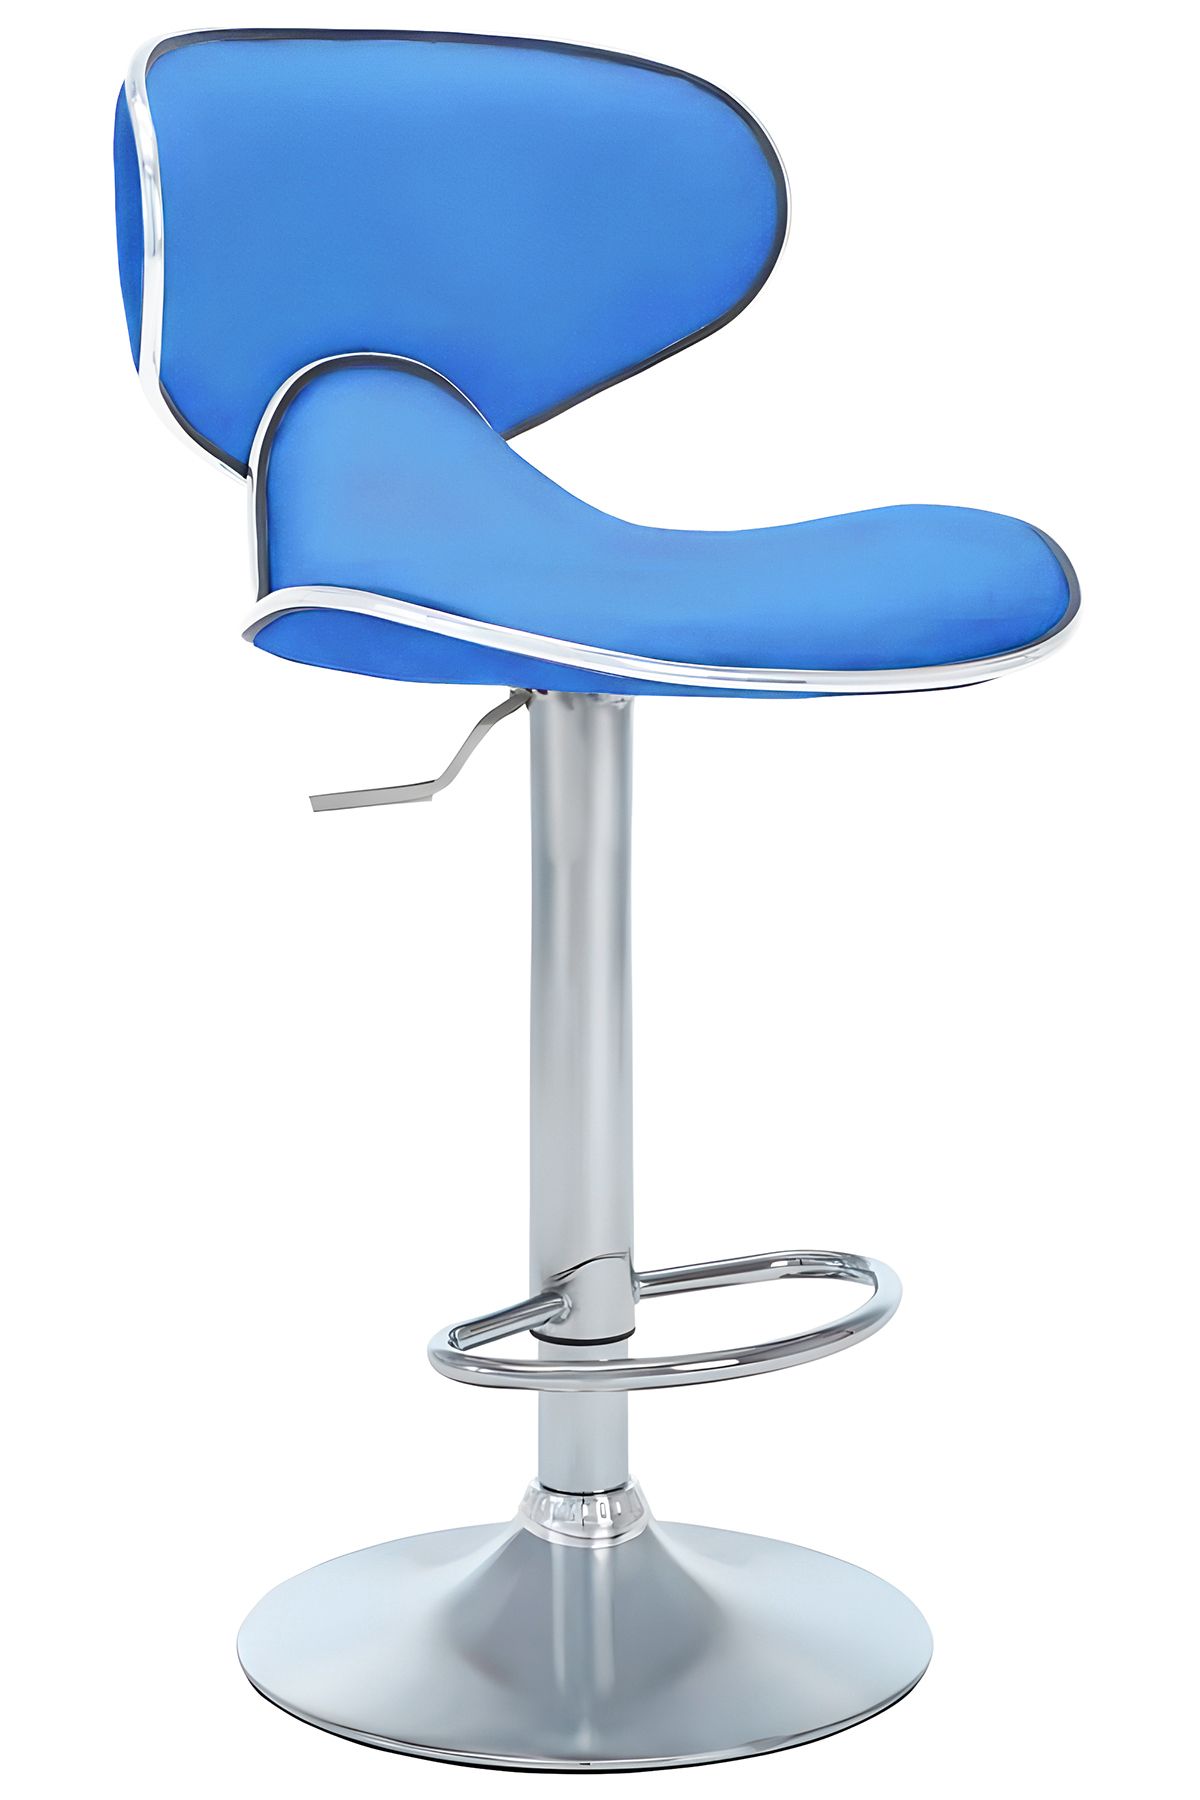 Bürocci Zen Bar Taburesi - Mavi Modern Deri Metal Ayaklı Yüksek Tezgah Sandalyesi - 9549s0514